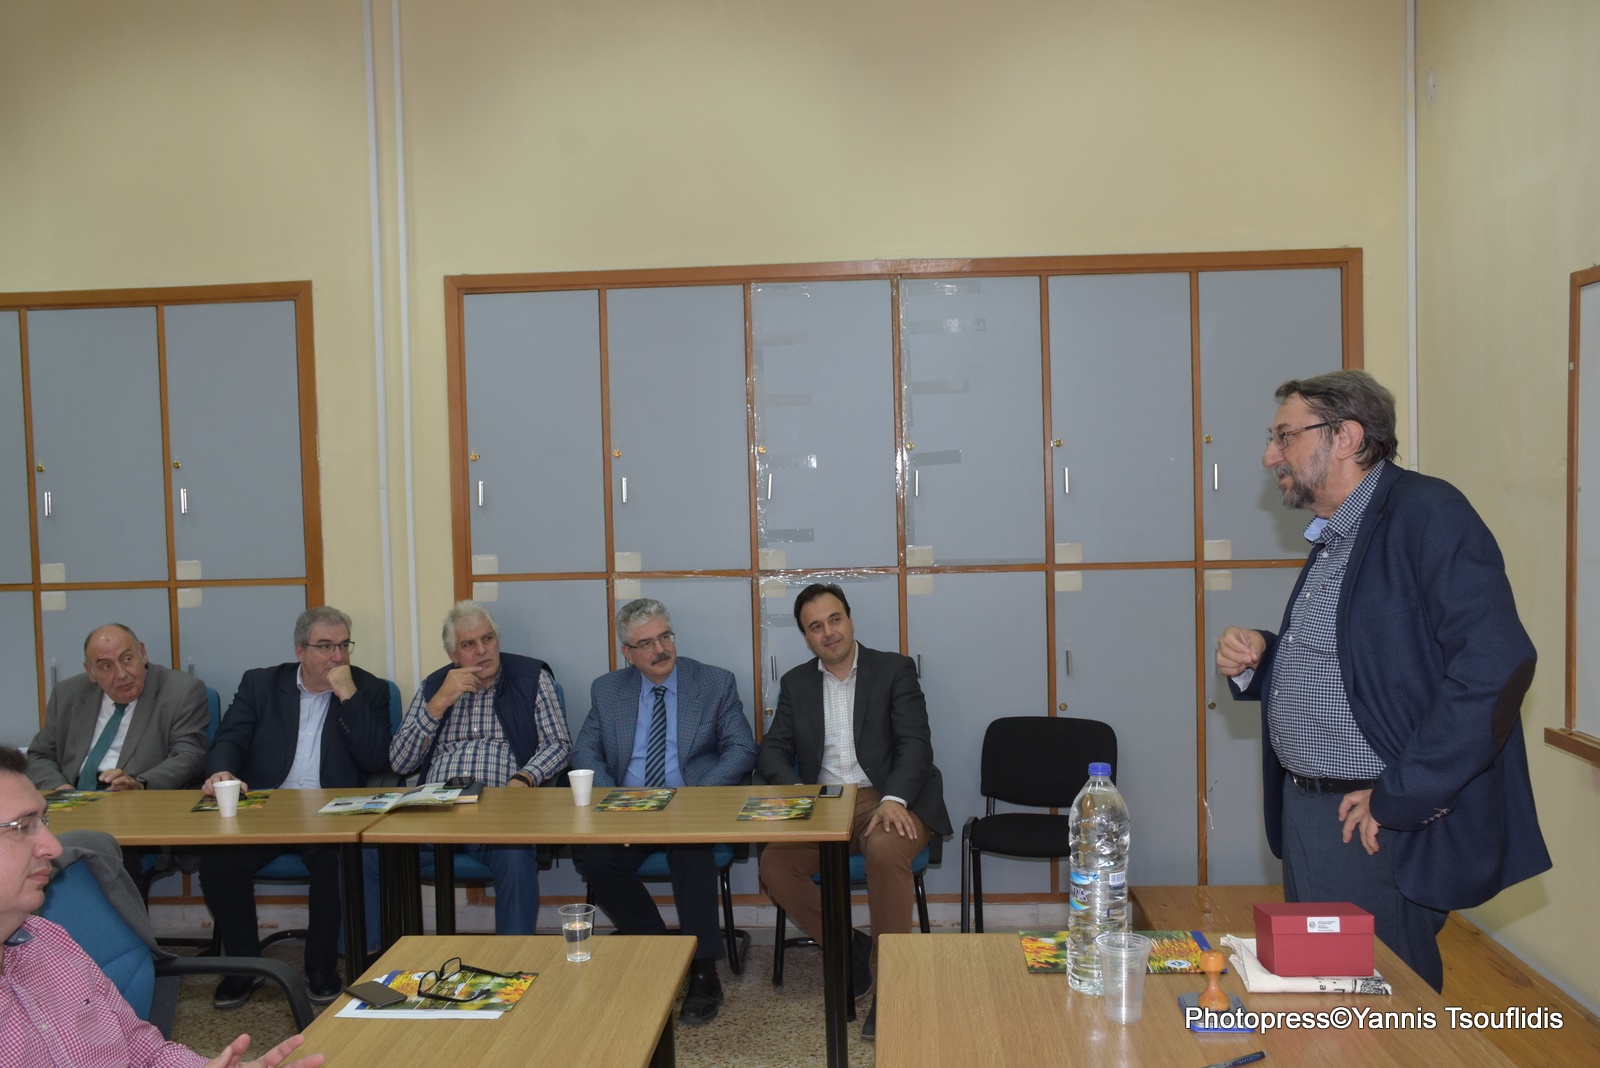 Σύμφωνο συνεργασίας του Δήμου Λαρισαίων και της Πολυτεχνικής Σχολής του ΑΠΘ